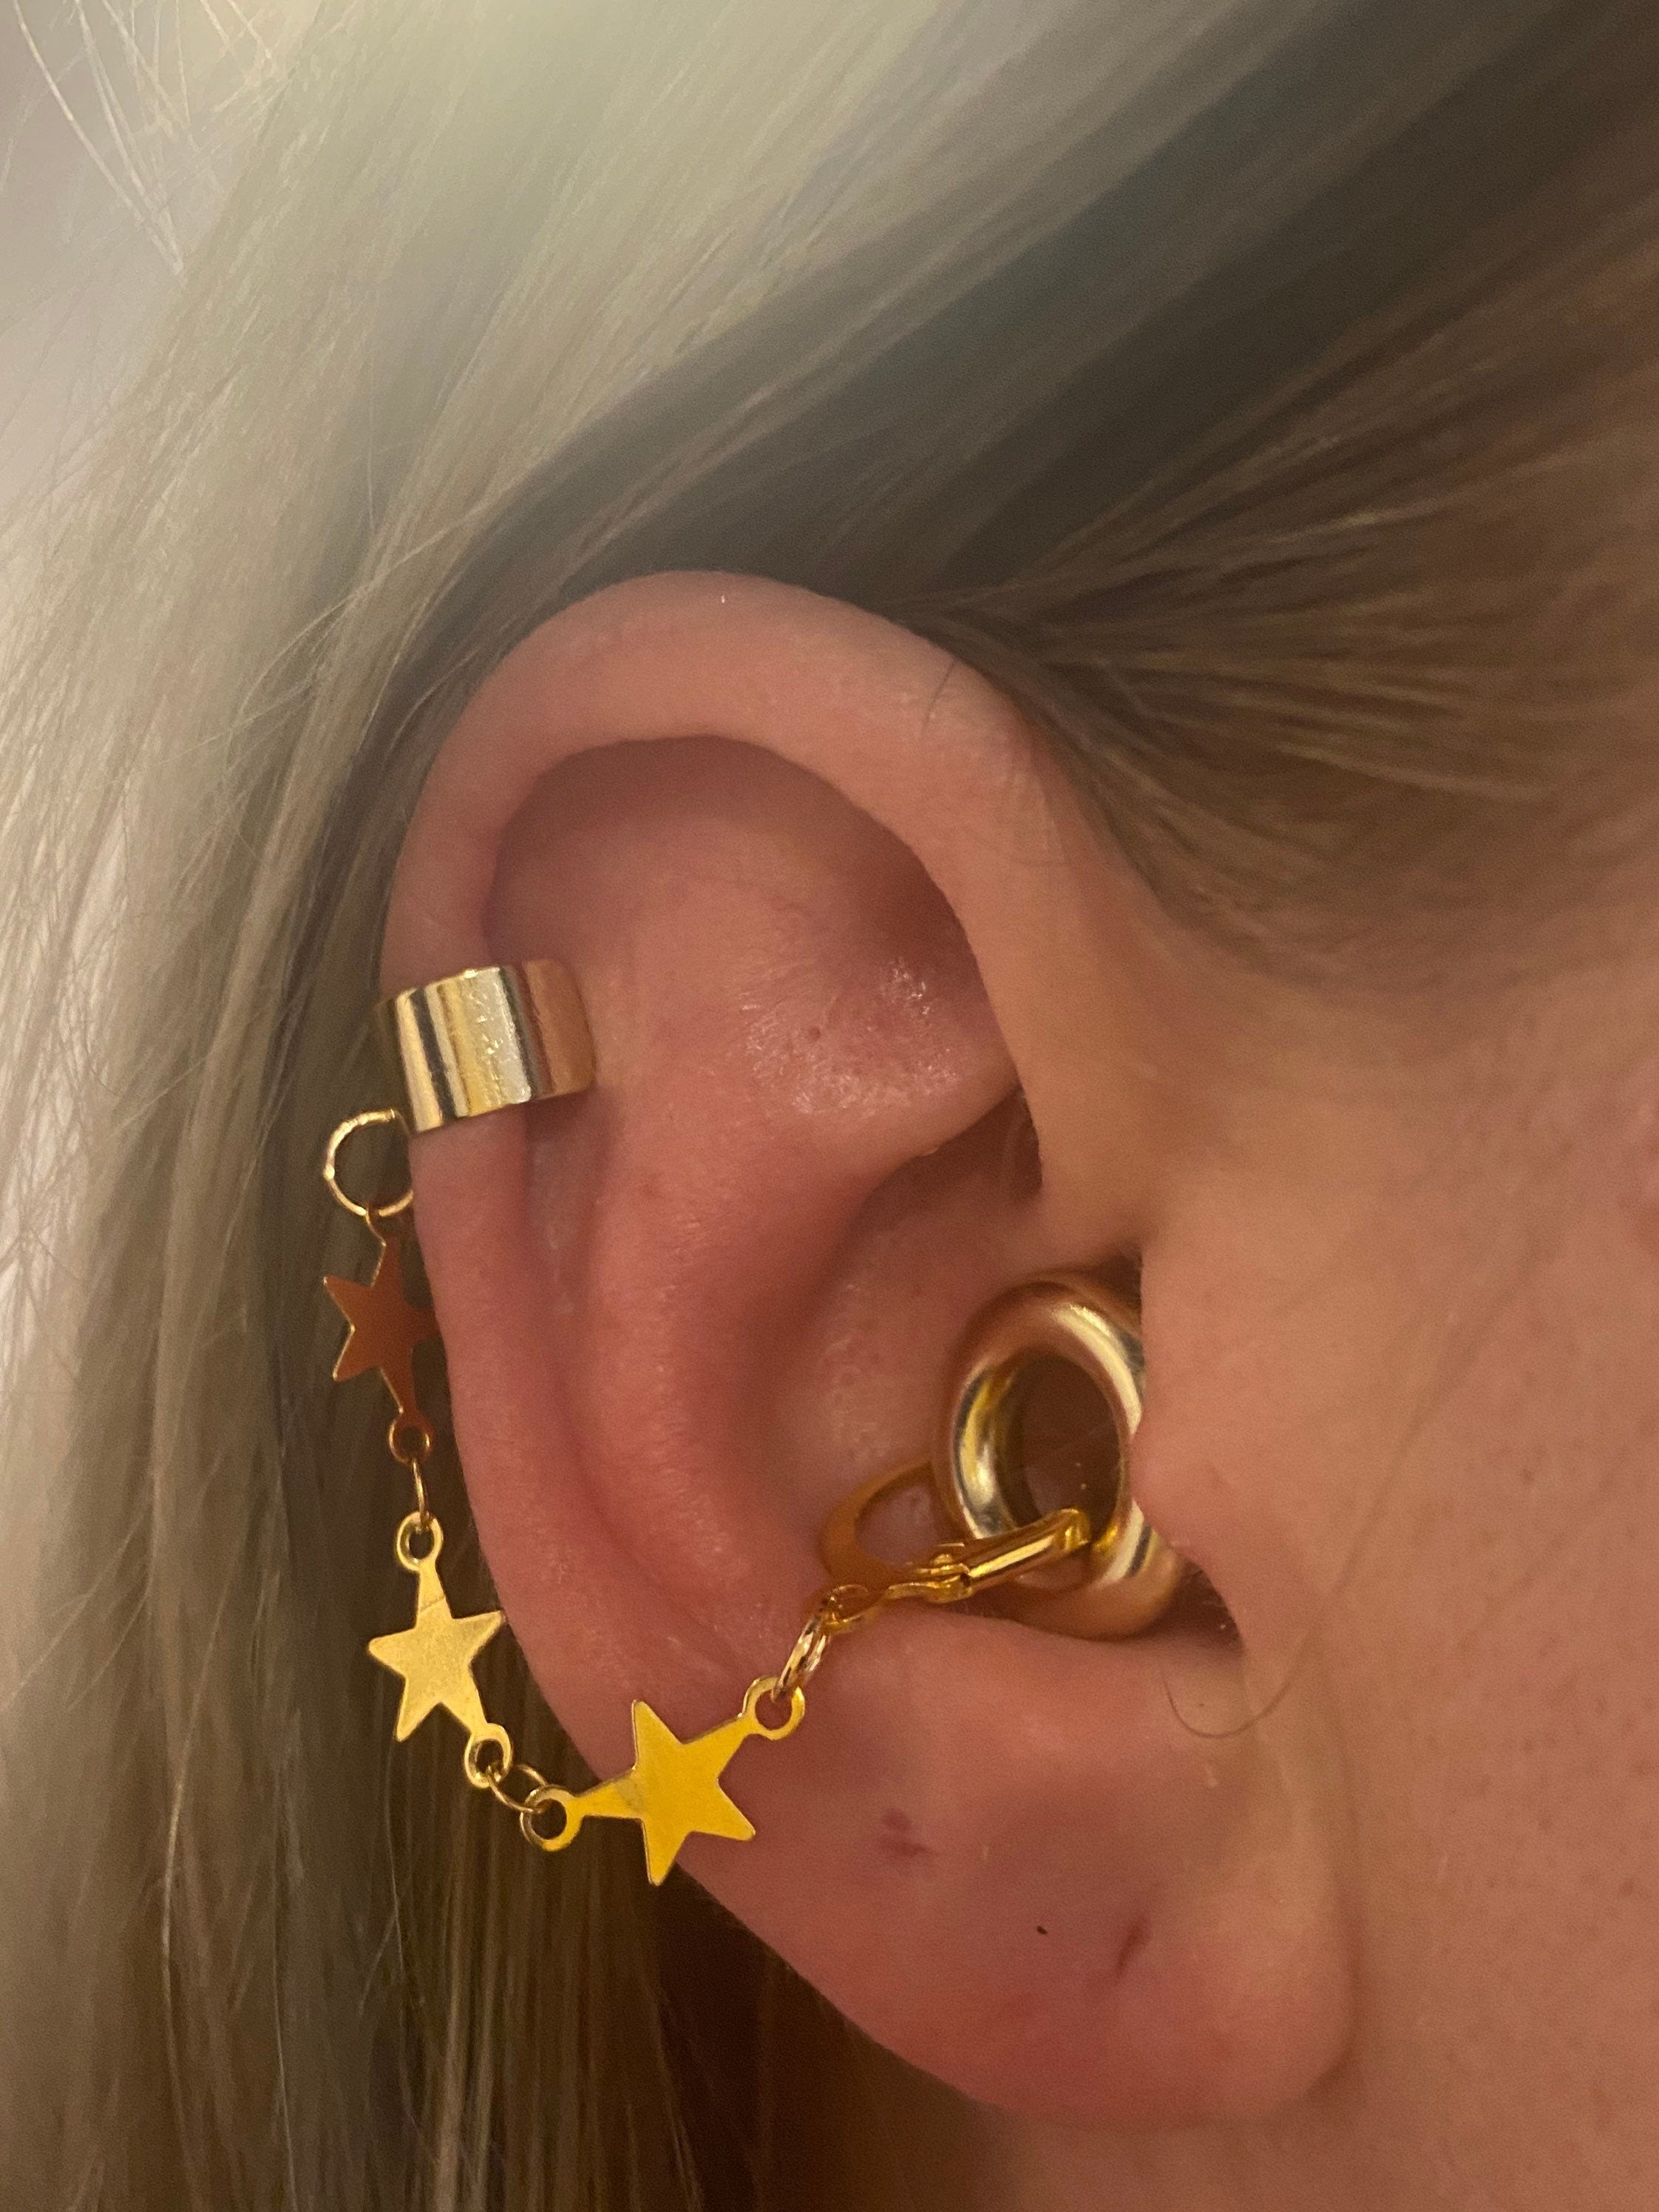 Gold Star ear cuff earrings for Loop earplugs – Purple Heart Design